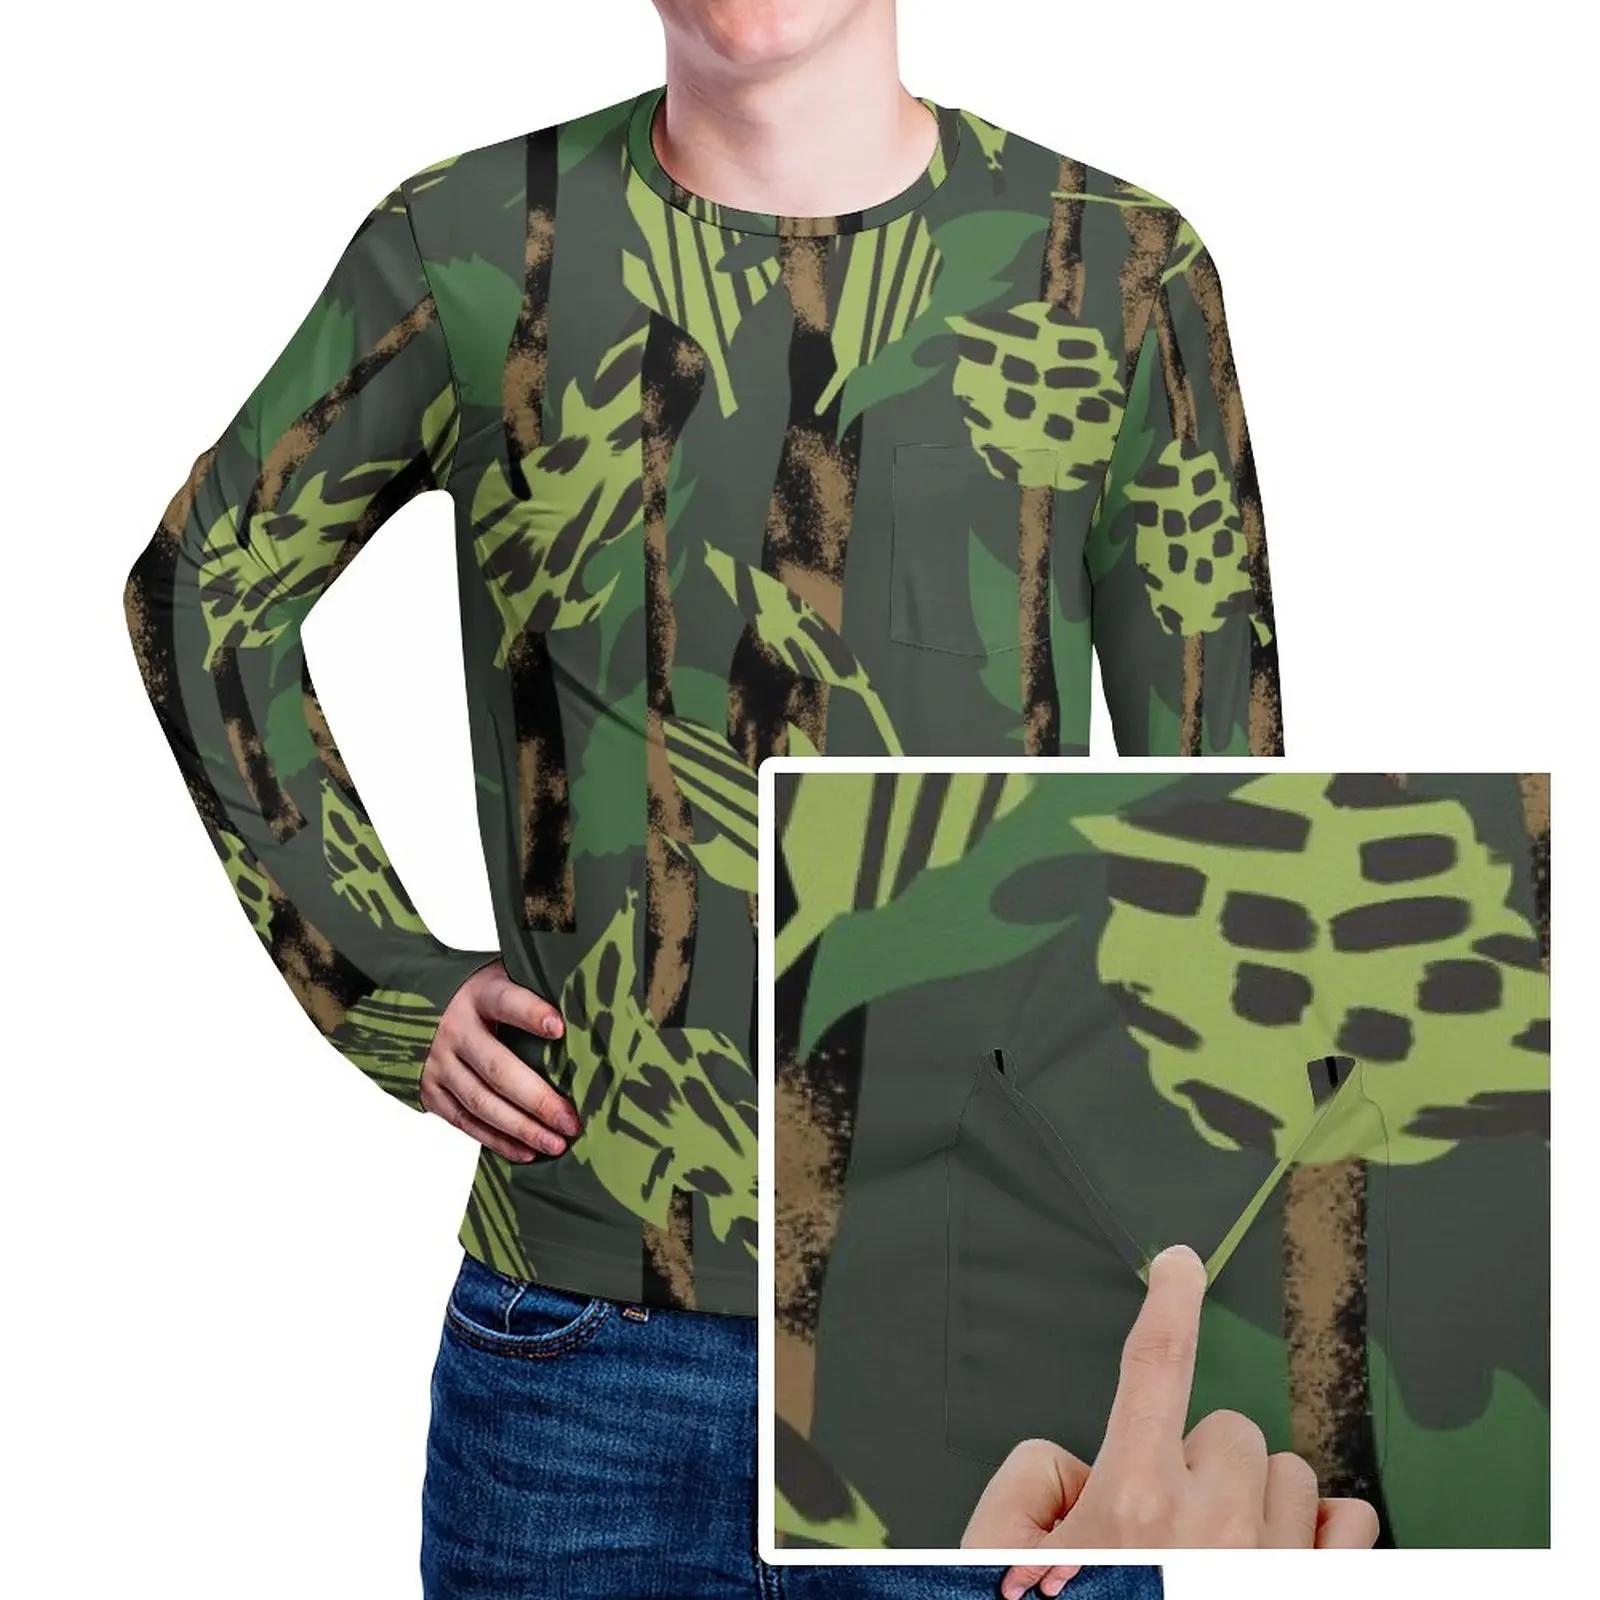 

Зеленая футболка с камуфляжным принтом, футболки в стиле хип-хоп с леопардовым принтом и карманом, дизайнерская футболка с длинным рукавом, базовые футболки оверсайз на весну